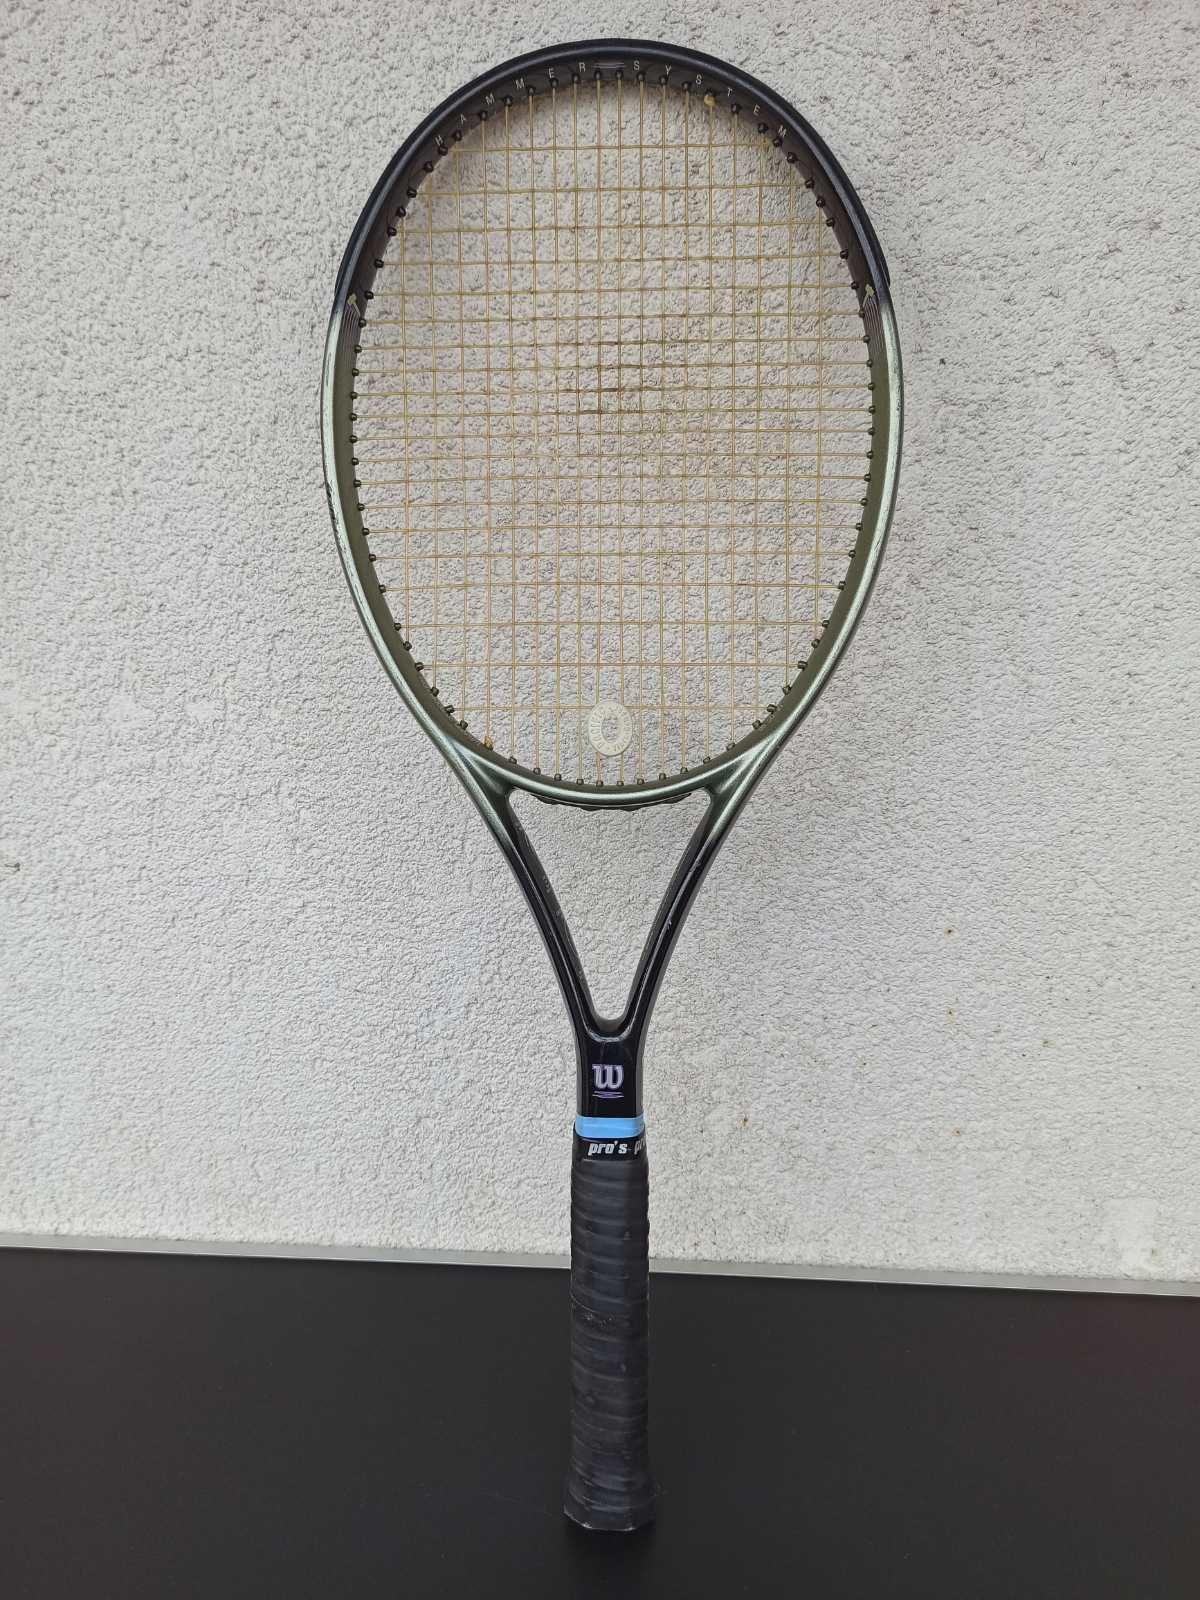 racheta tenis WILSON HAMMER 2.7 4 5/8 Grip dual taper beam pro's